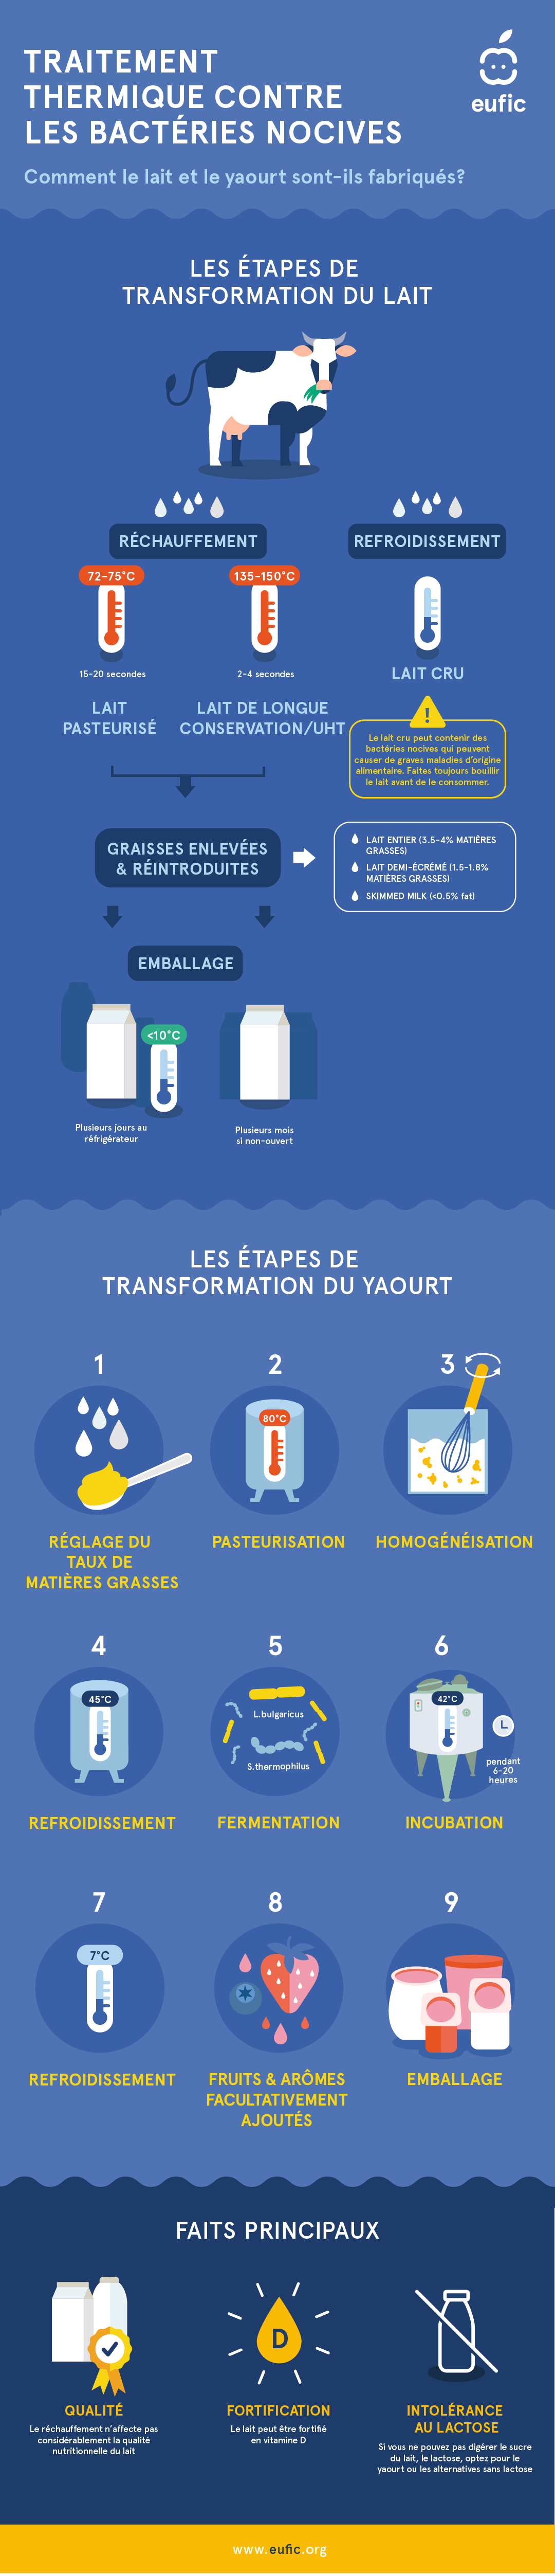 Les étapes de transformation du lait et du yaourt